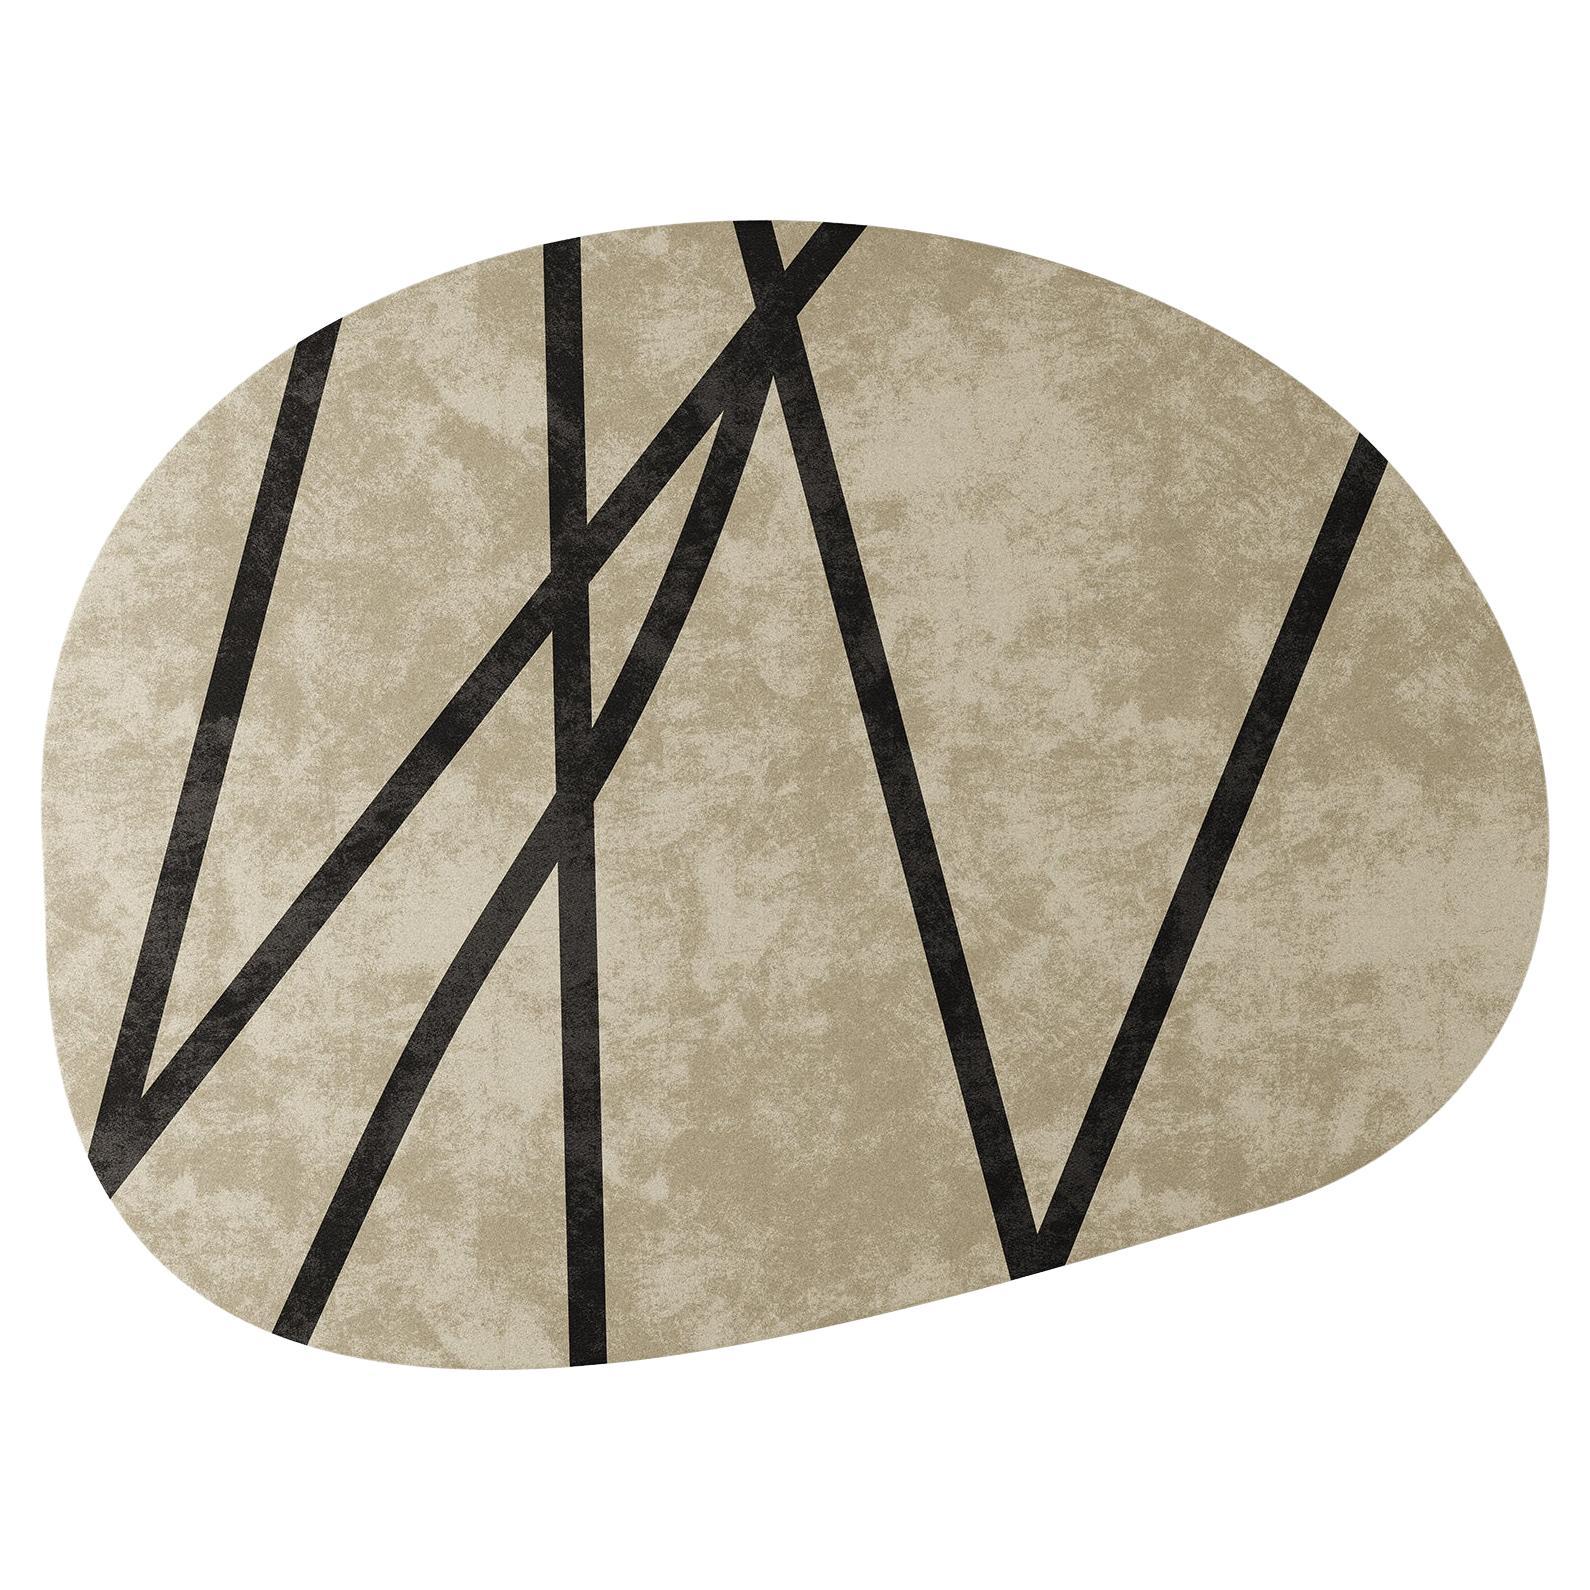 Moderner runder, anpassbarer, organischer Teppich in organischer Form in neutraler Farbe und schwarzem Detail